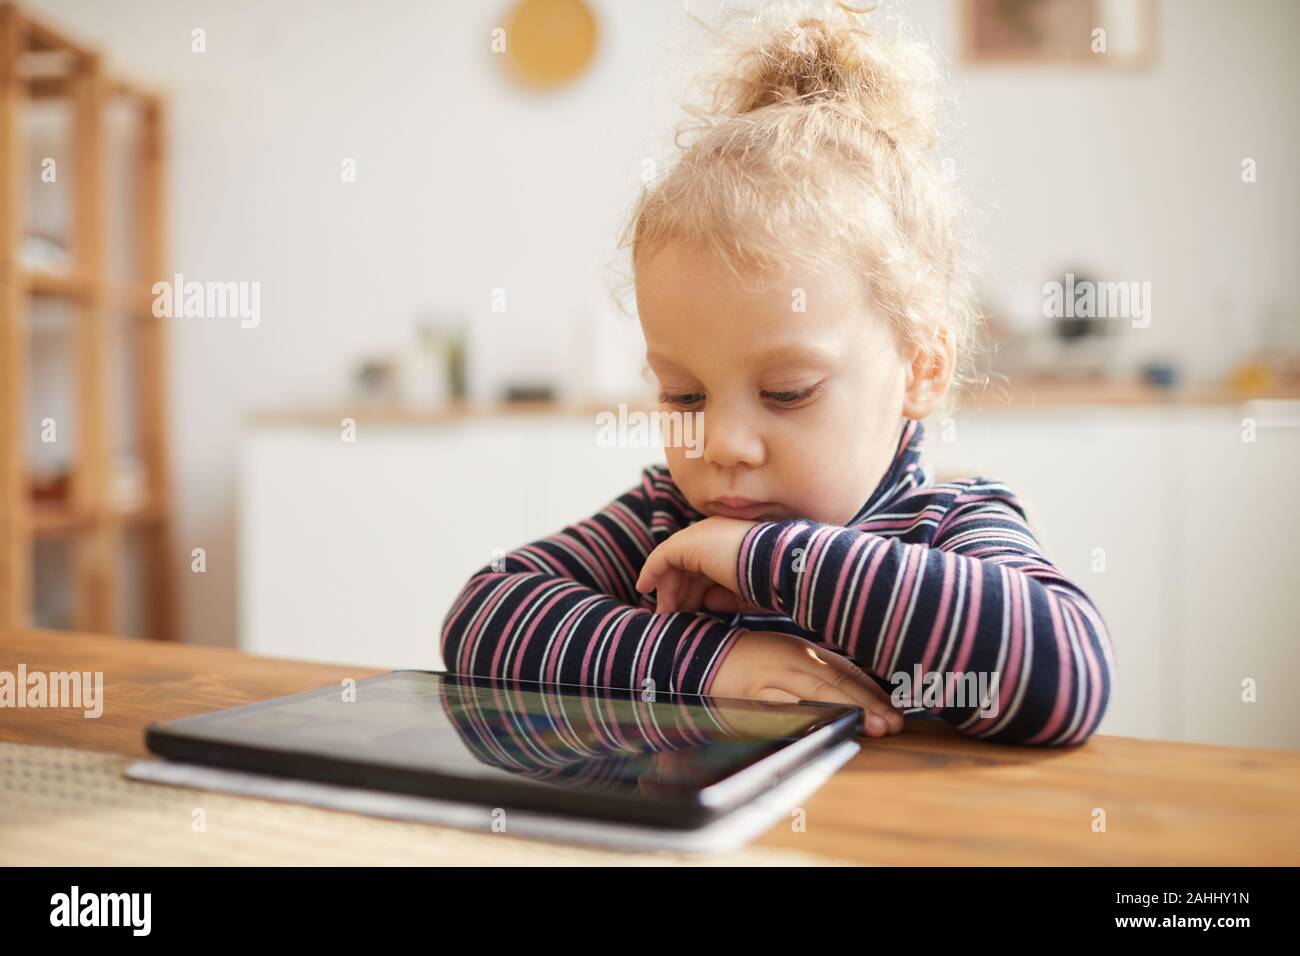 In warmen Tönen Portrait von niedlichen kleinen Mädchen auf der Suche nach digitalen Tablet beim Sitzen am grossen Tisch in der gemütlichen Küche, Kopie Raum Stockfoto